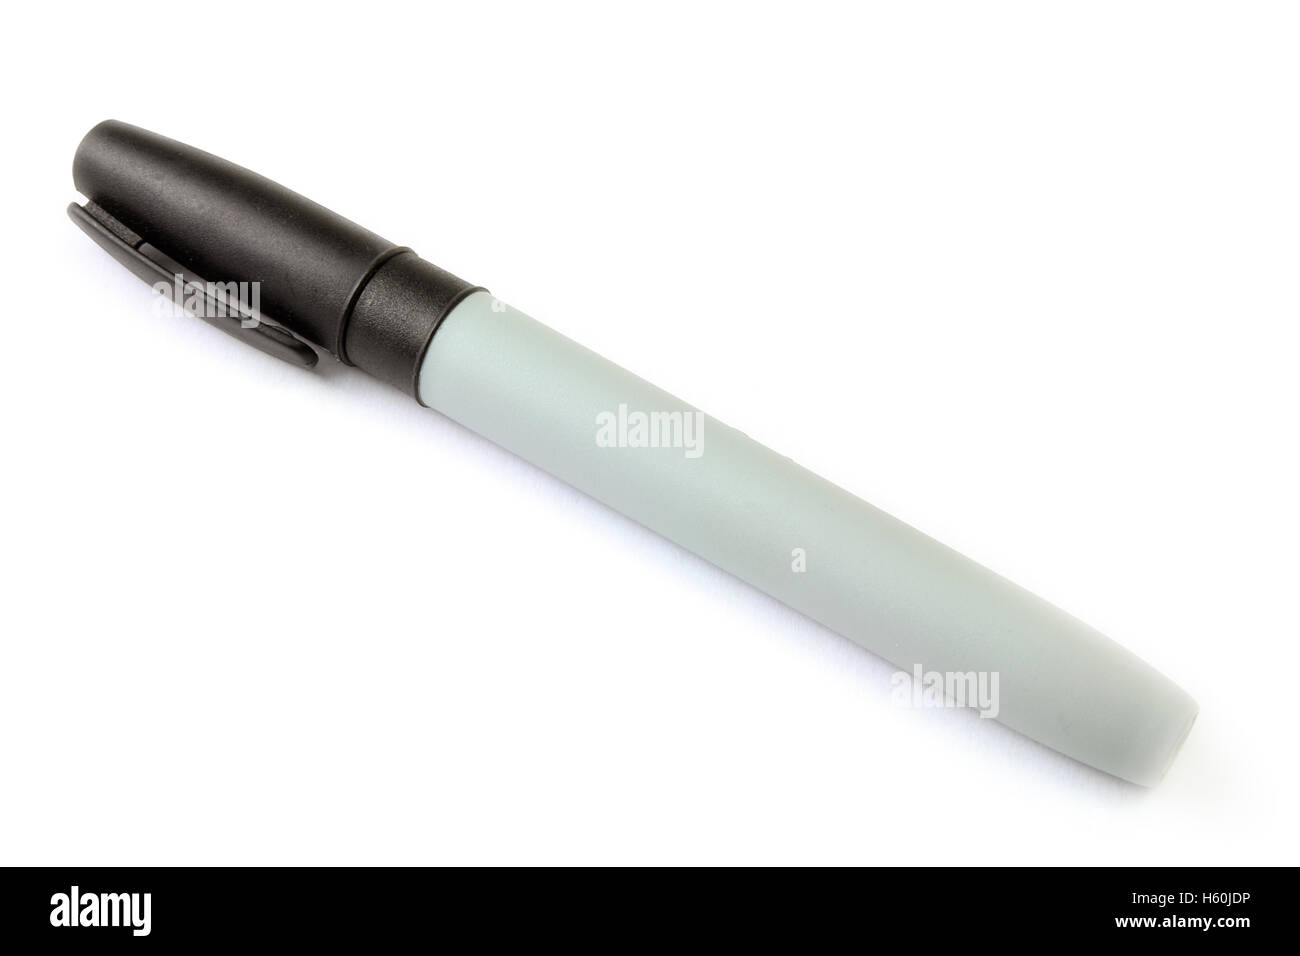 Black marker pen for flipchart or whiteboard Stock Photo